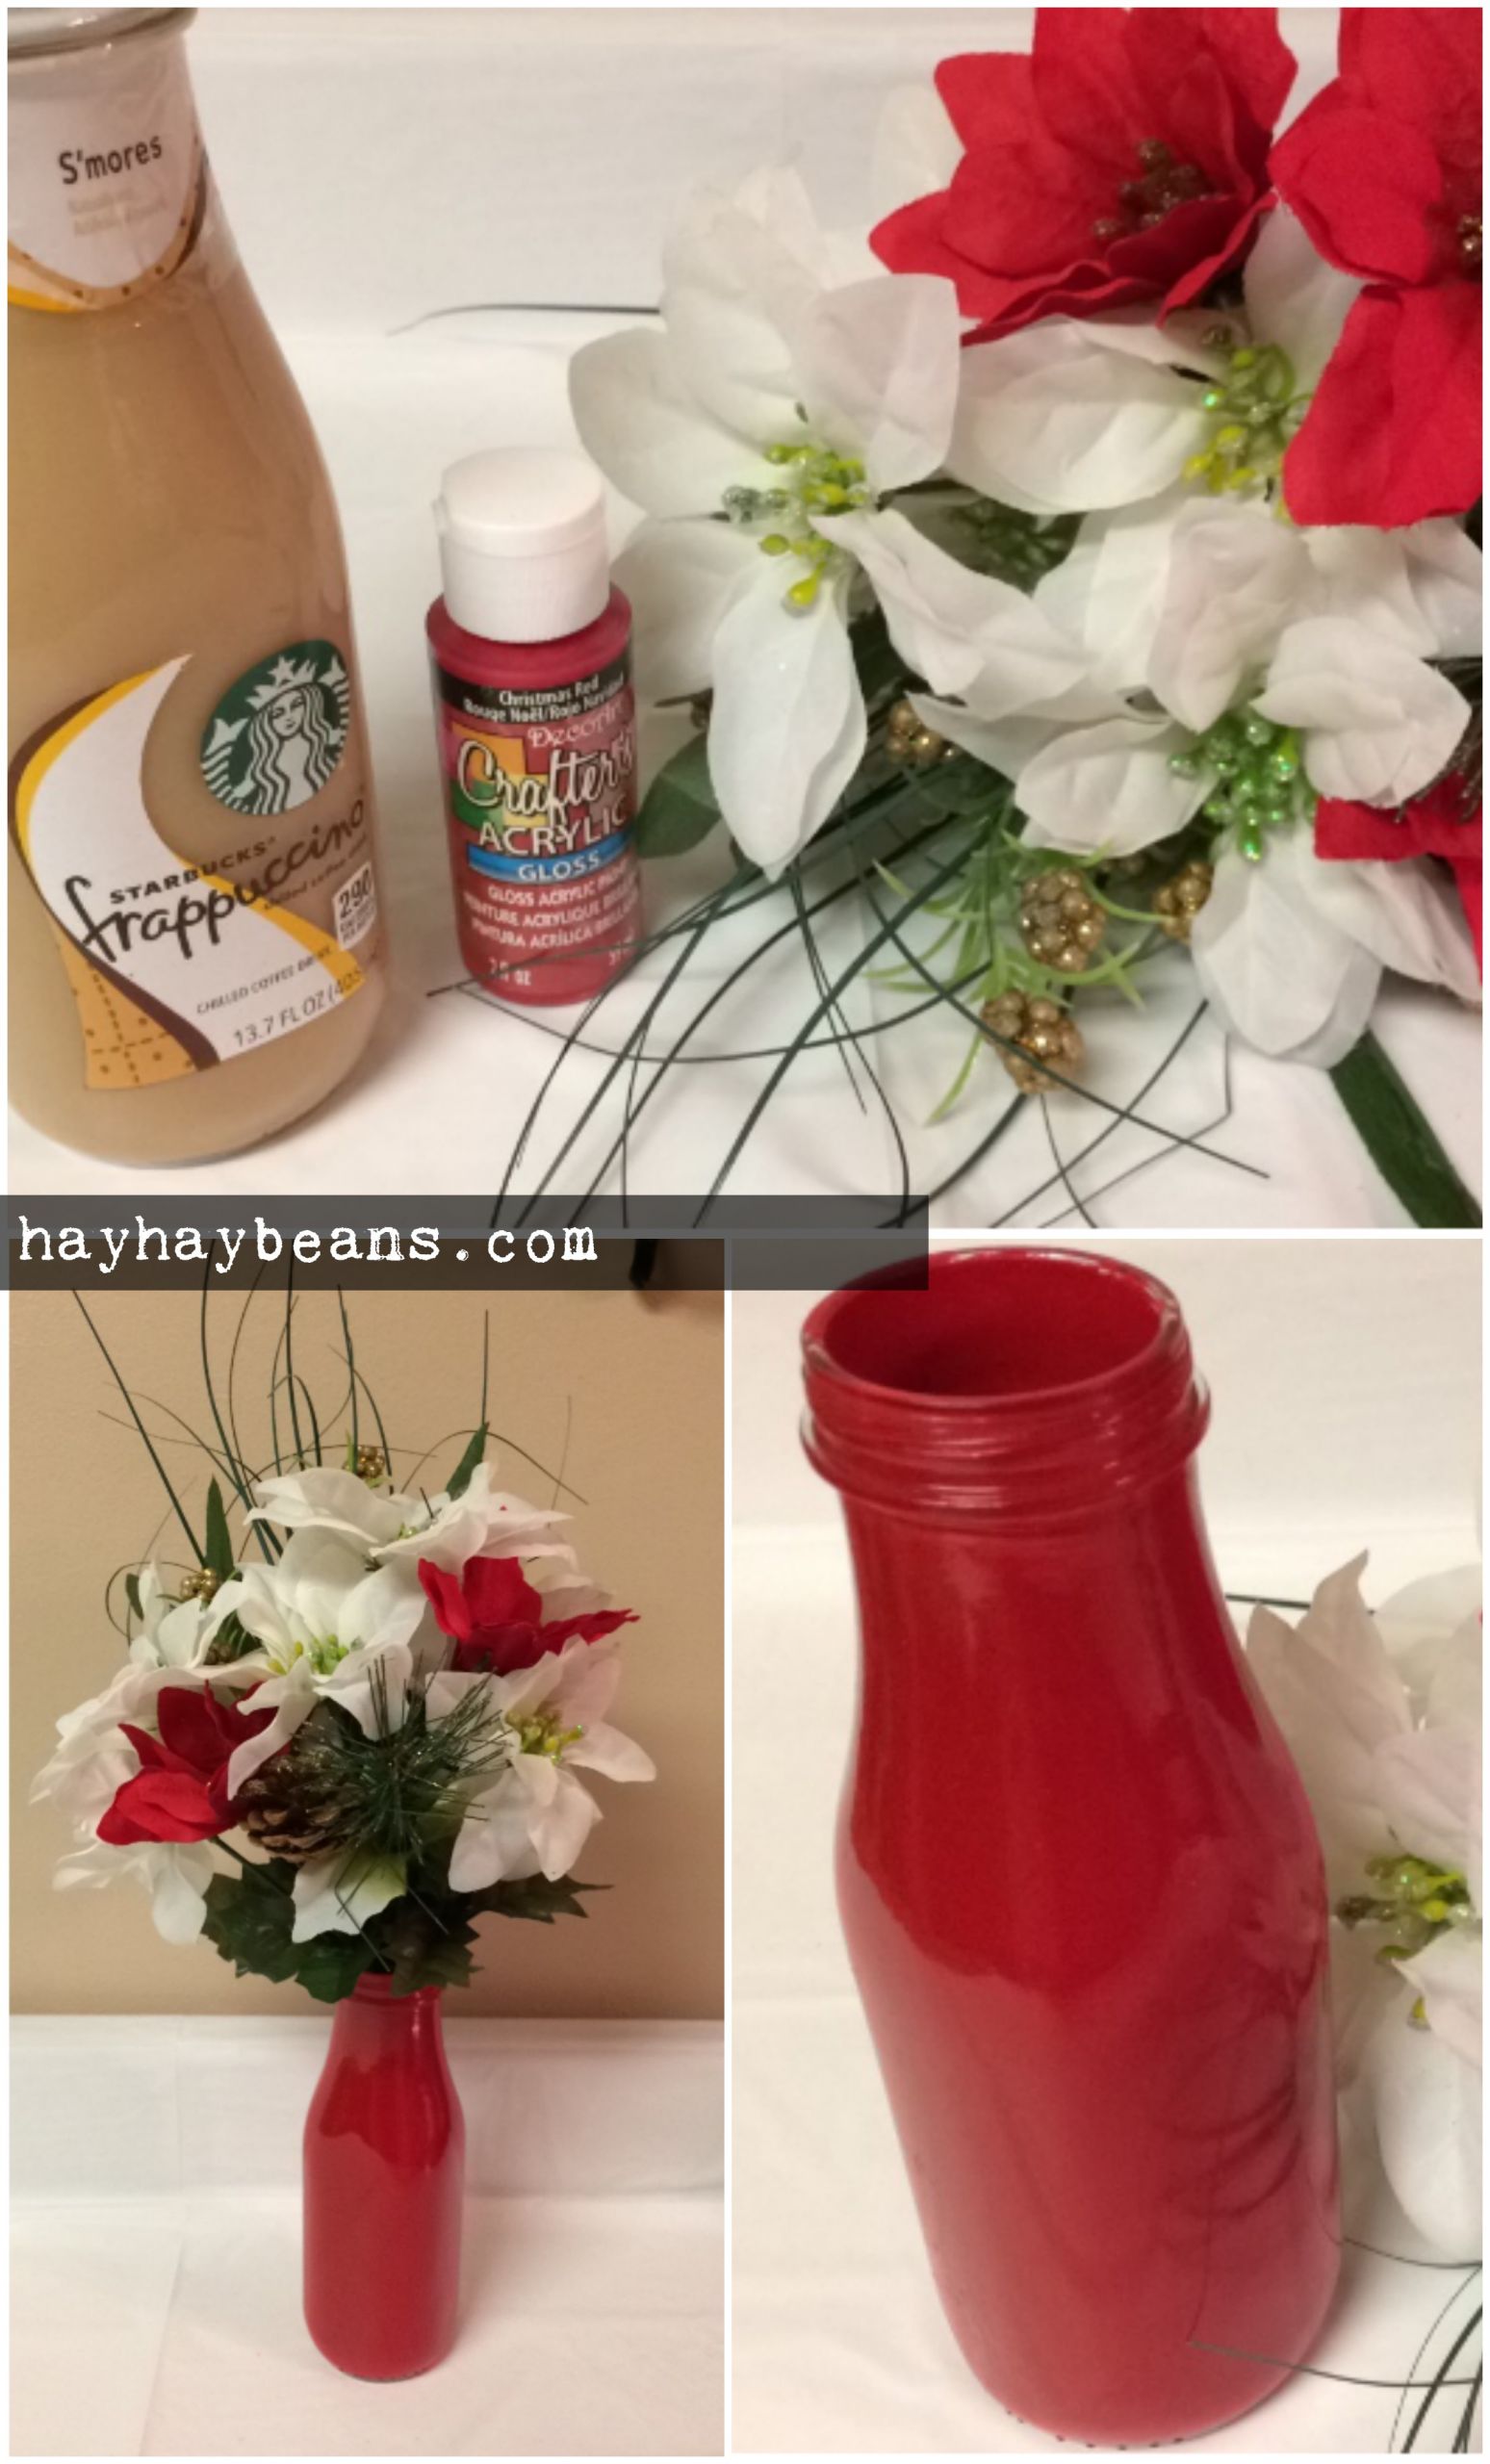 DIY Vase Decorating
 [DIY – Cheap Flower Vase Decor Using Starbucks Glass Bottle]